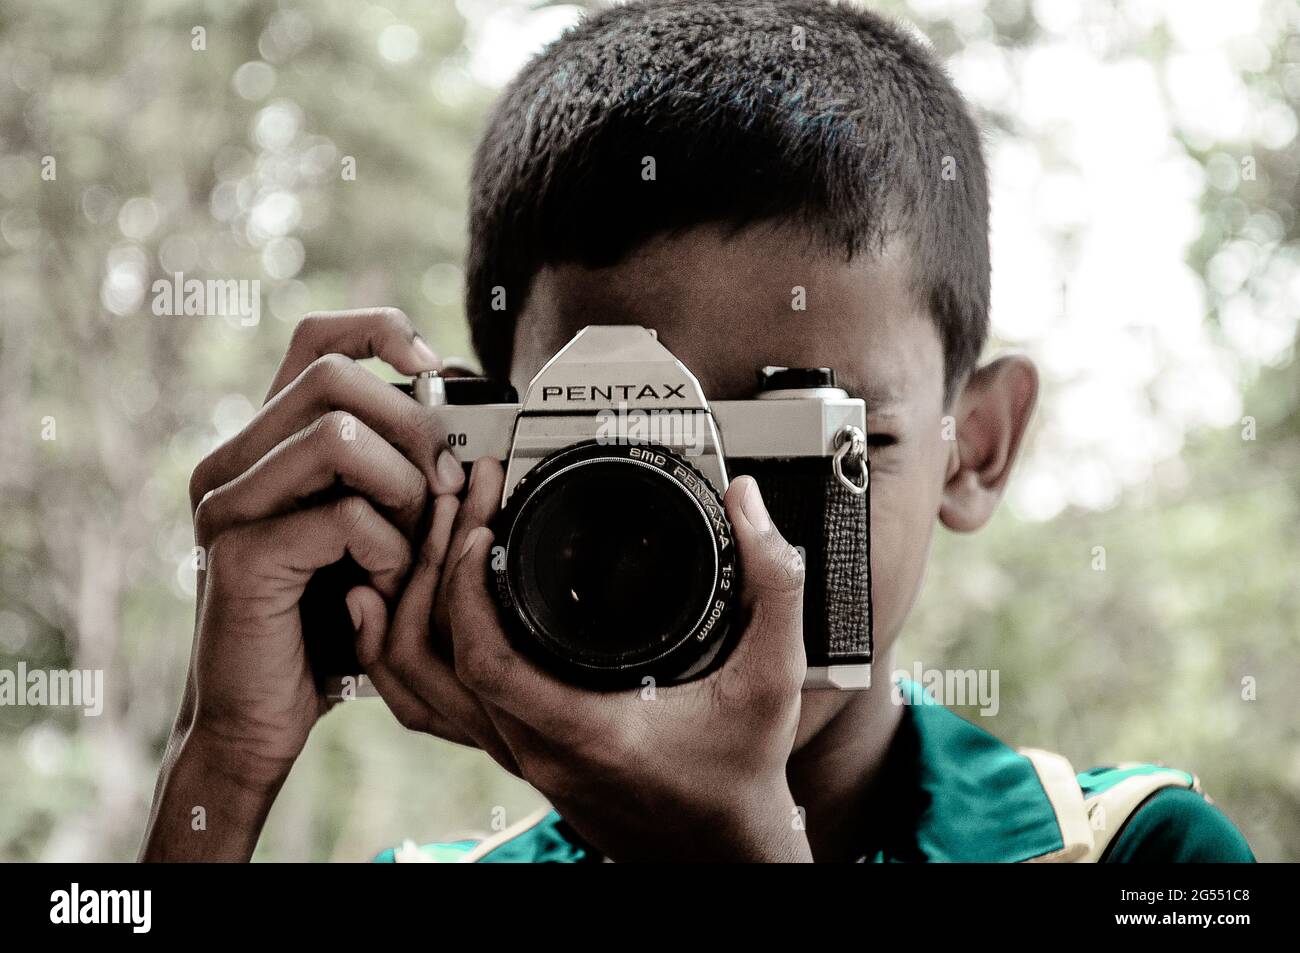 Ein Kind mit einer alten pentax-Kamera. Ich nehme dieses Bild in srilanka auf, es ist ein sehr schöner Moment. Stockfoto